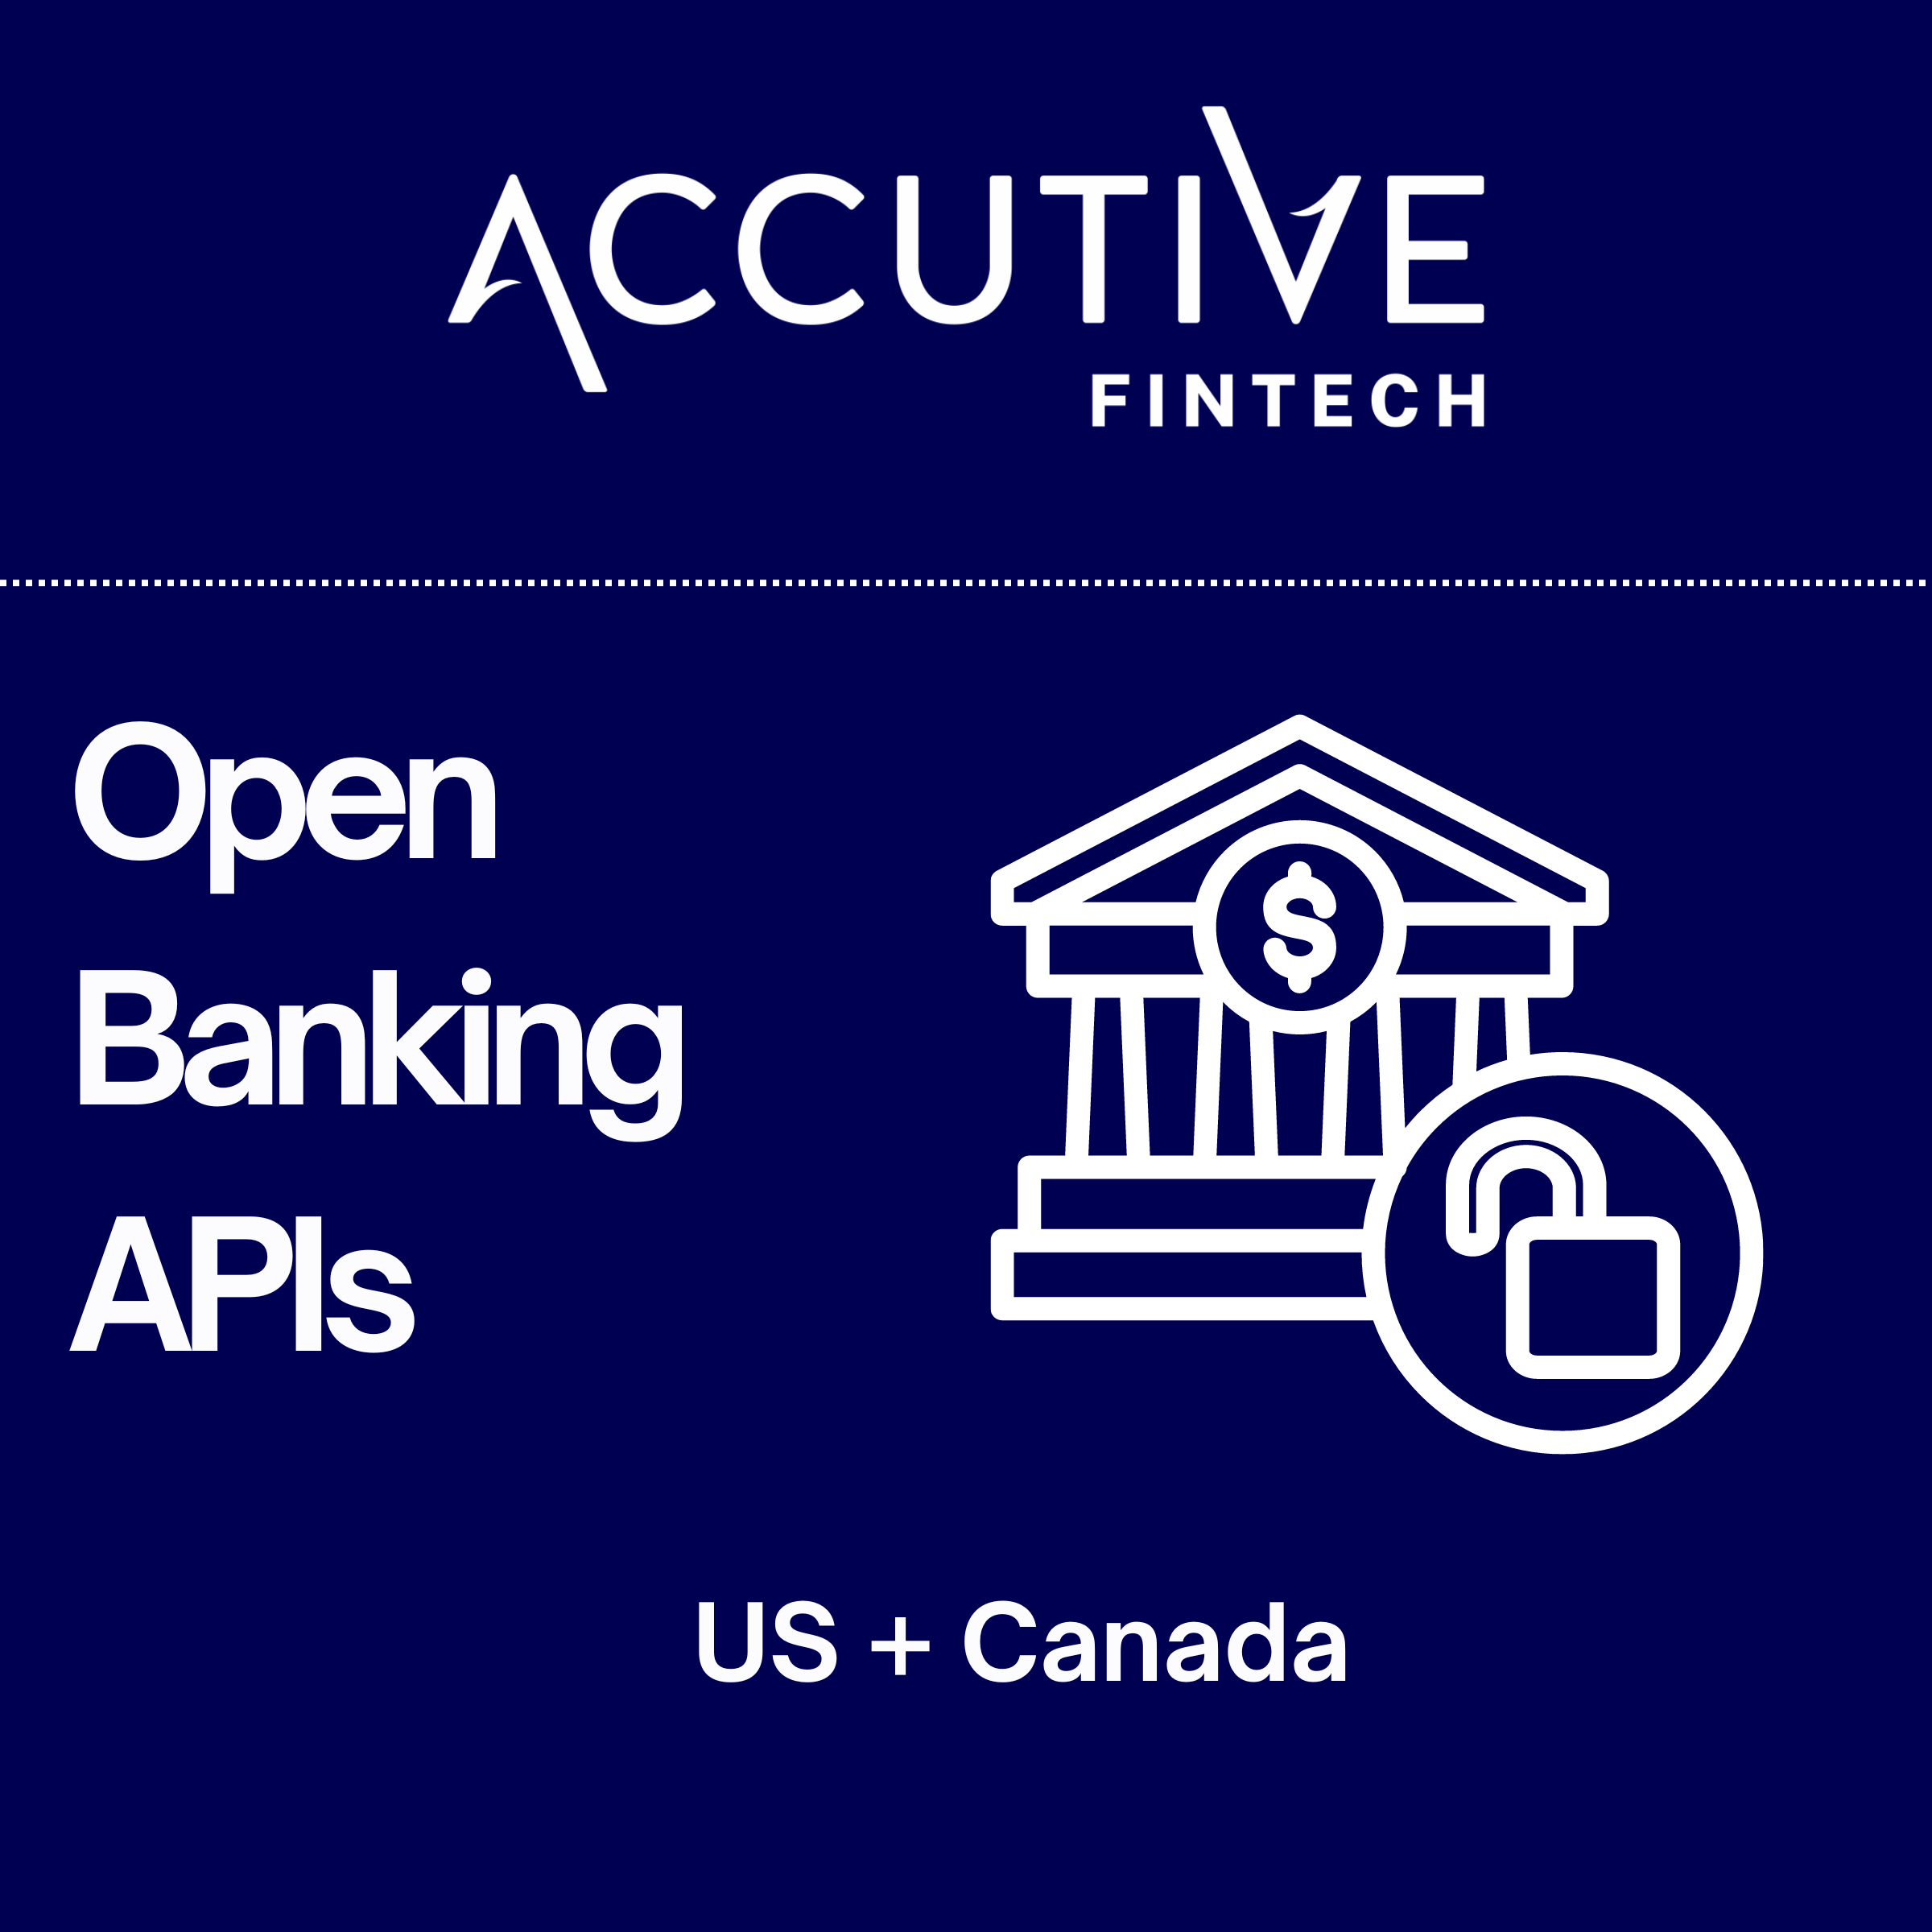 Open Banking APIs